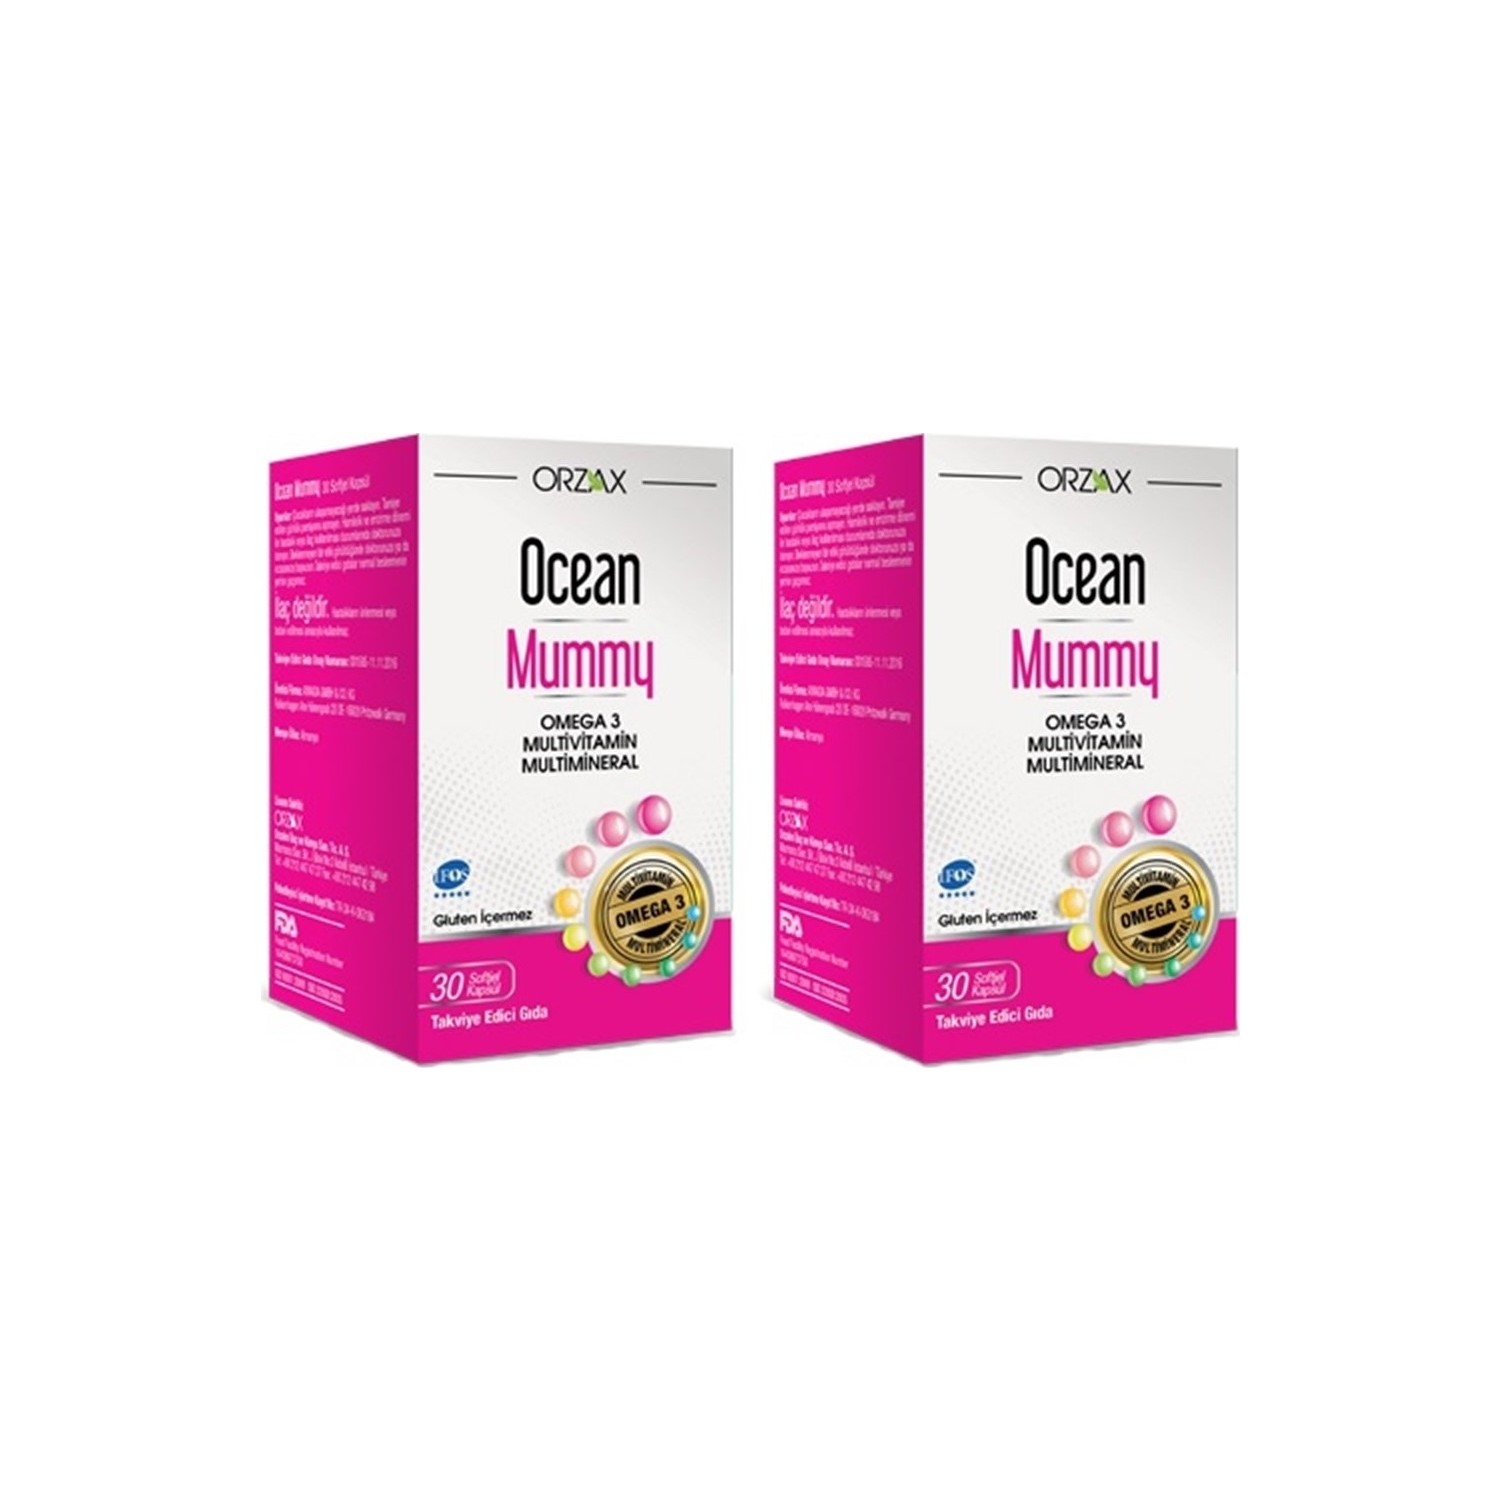 Мультивитамин Омега-3 Ocean Mummy, 2 упаковки по 30 капсул